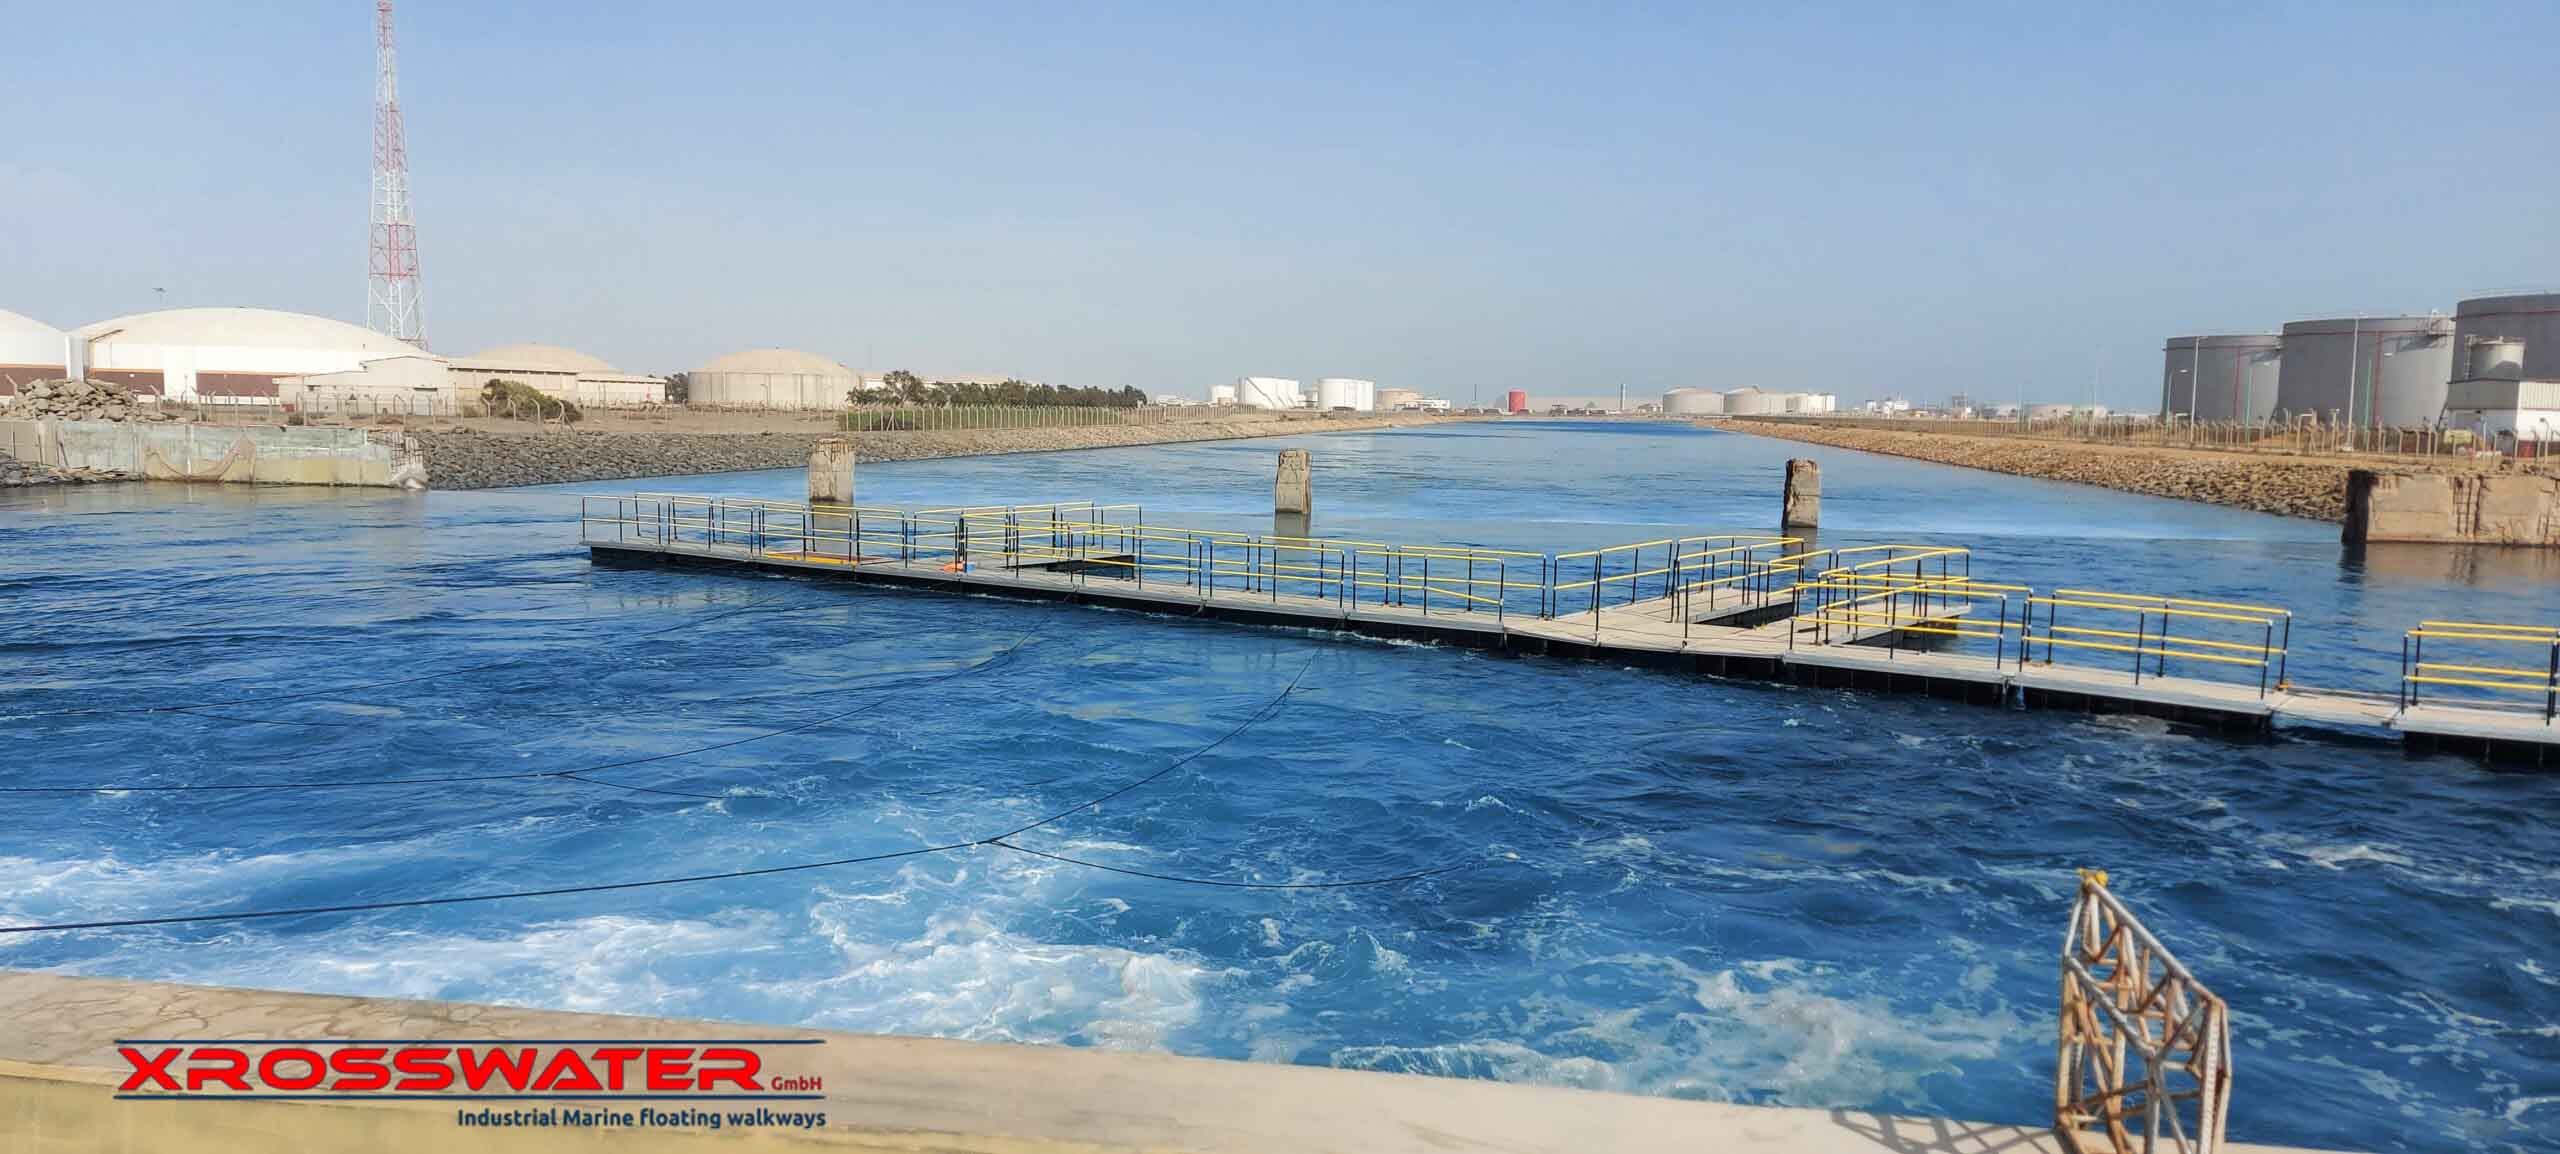 Pasarelas Xroswatter instaladas en la presa con el agua corriendo rápidamente en pleno funcionamiento de la central hidroeléctrica